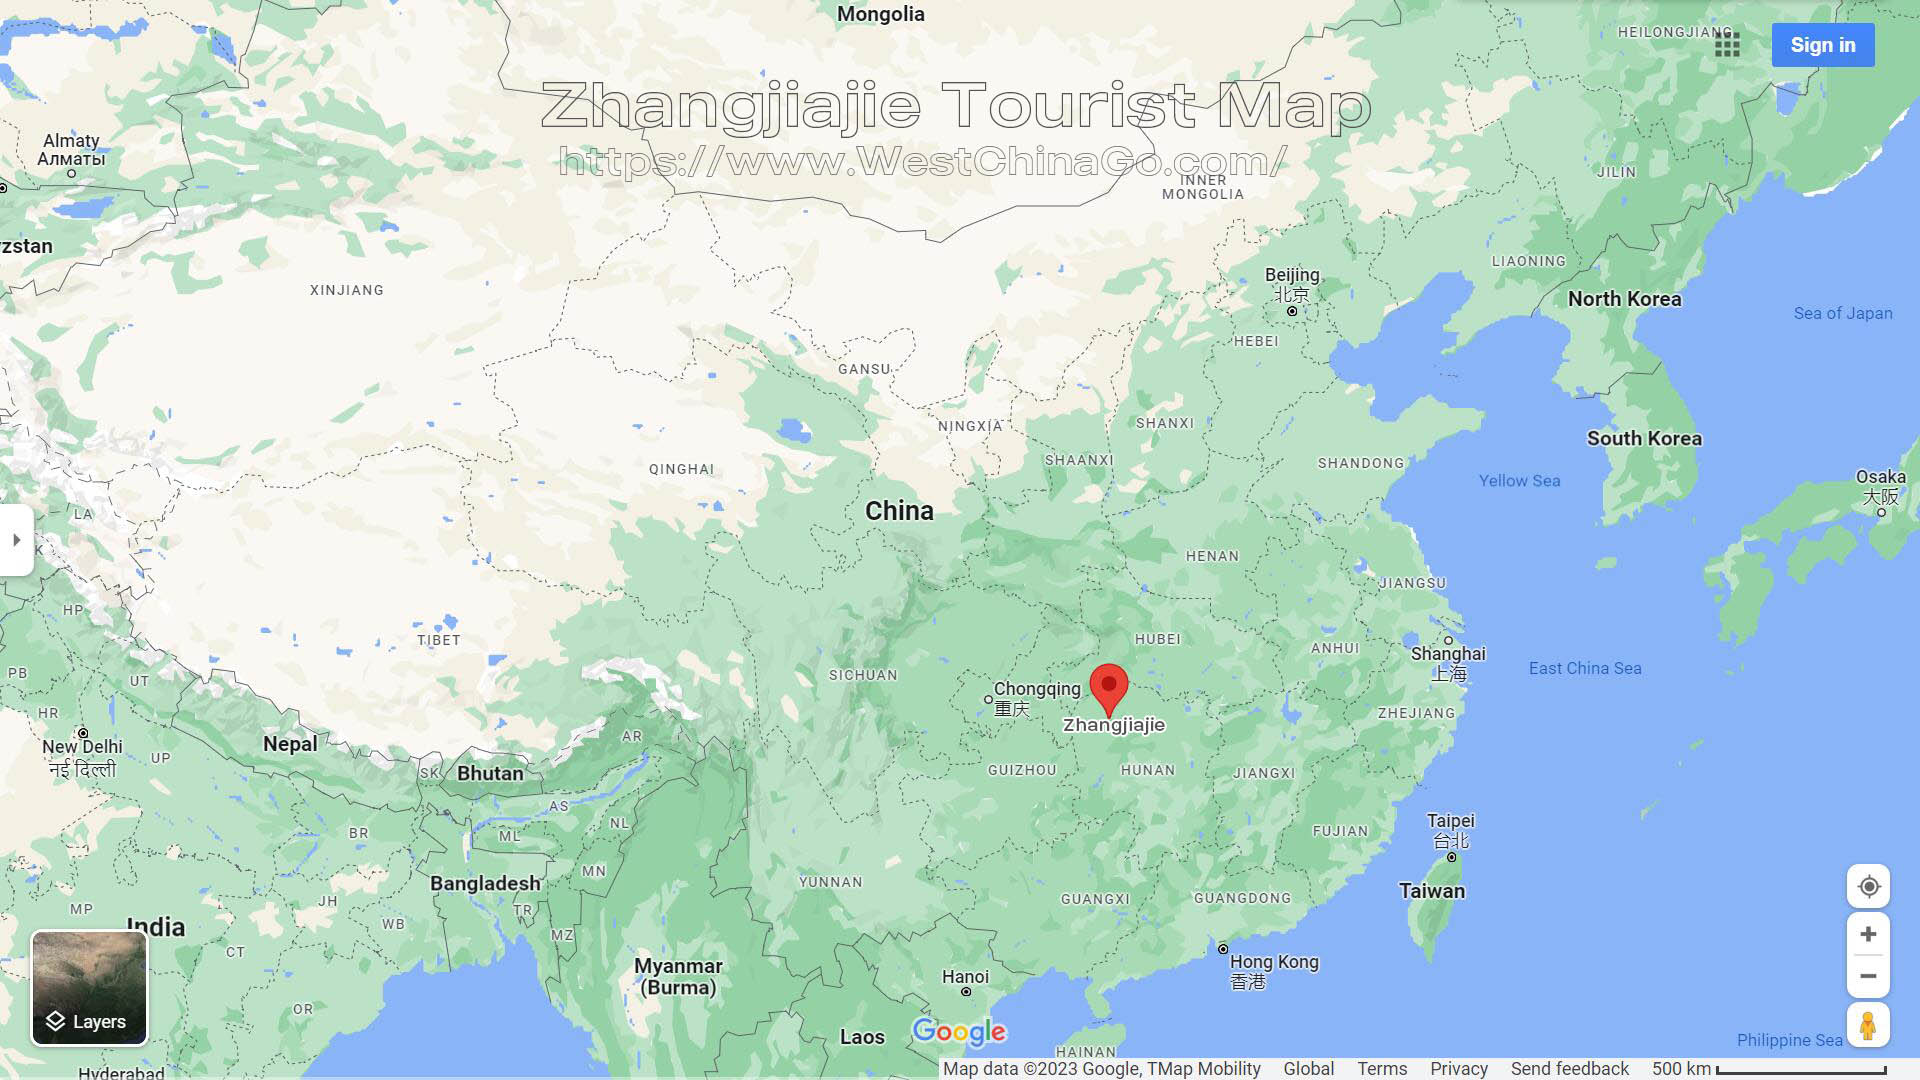 ZhangJiaJie Tourist Map